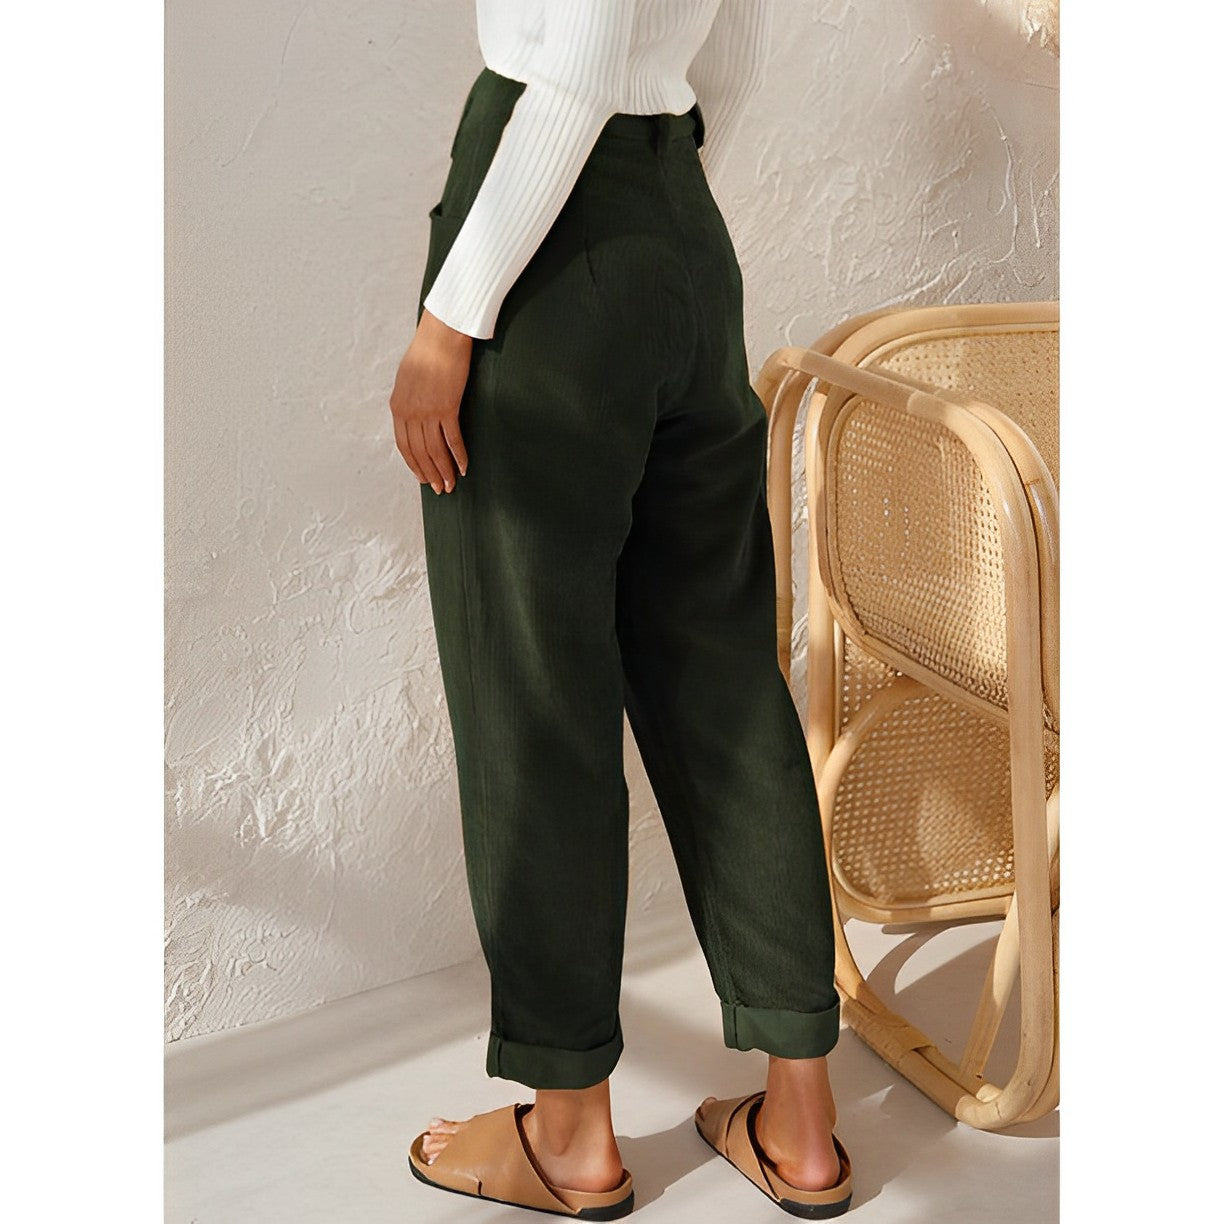 Alice Leroy® - Fashionable corduroy pants